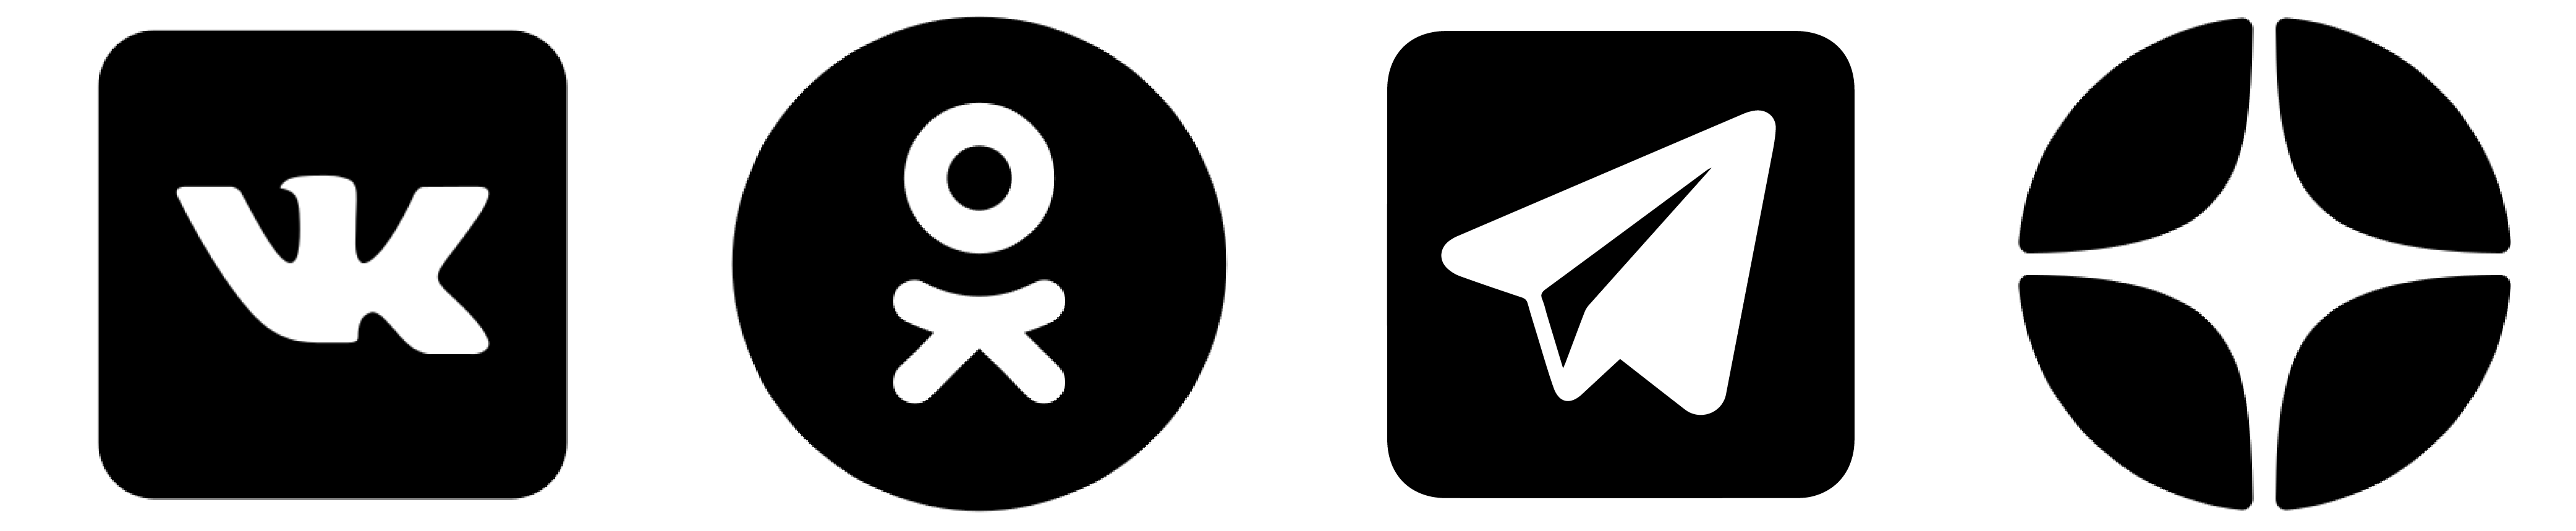 логотипы соцсетей и мессенджеров, где есть "Водник"